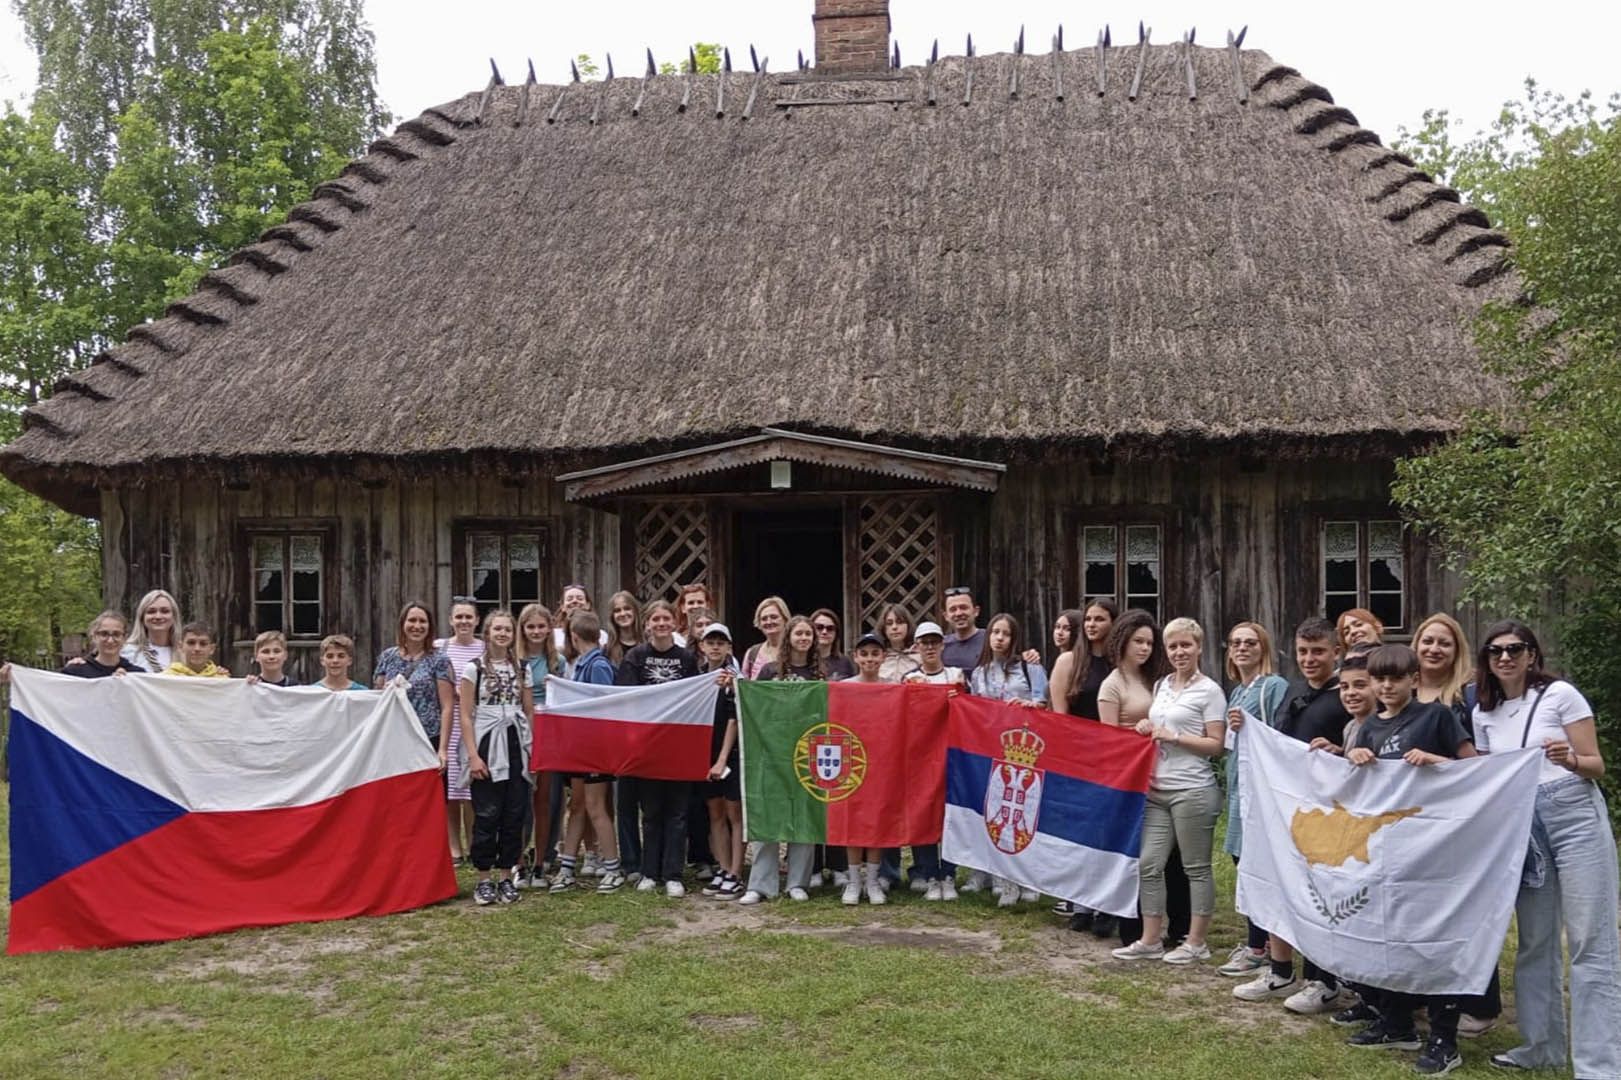 Relato da nossa experiência Erasmus na Polónia